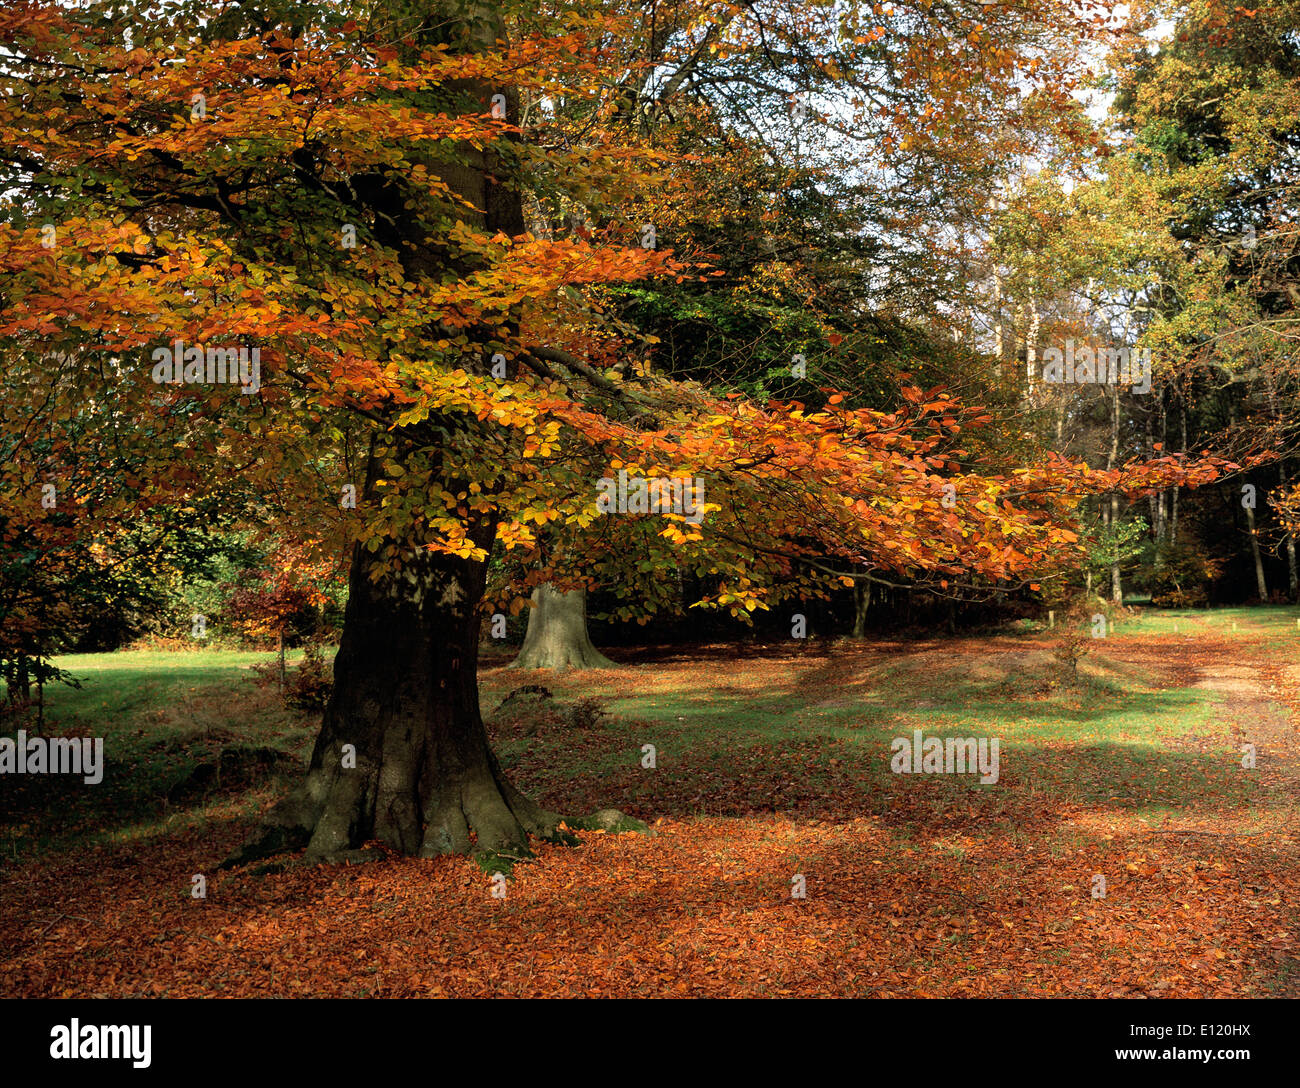 United Kingdom. England. Hertfordshire. Ashridge autumn woods. Stock Photo